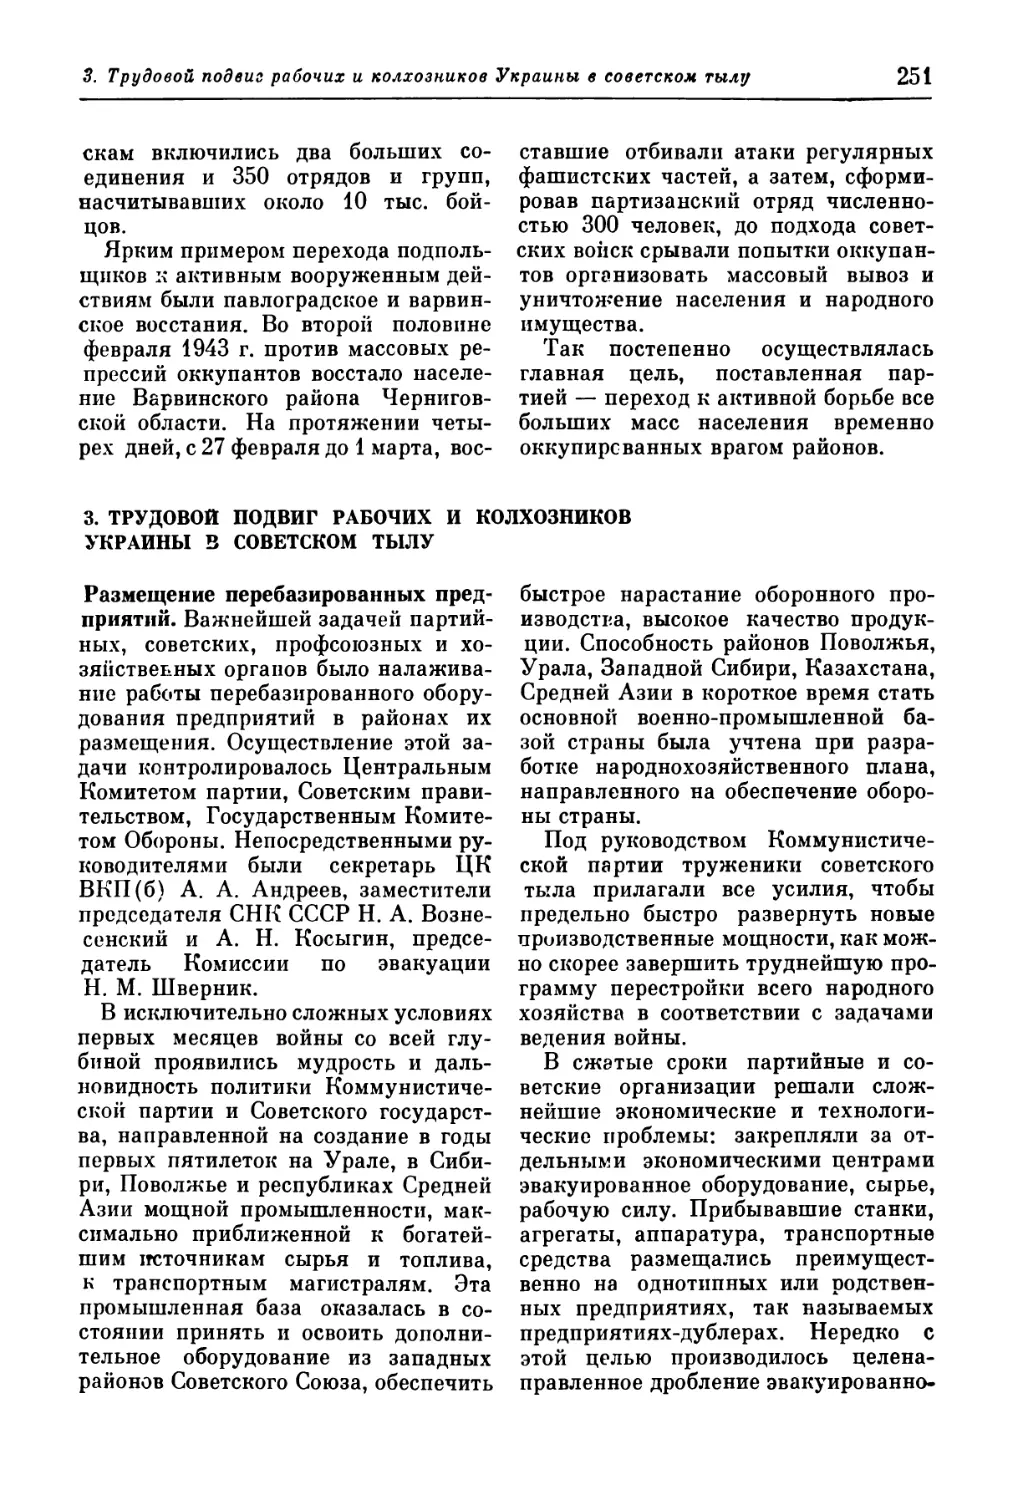 3. Трудовой подвиг рабочих и колхозников Украины в советском тылу